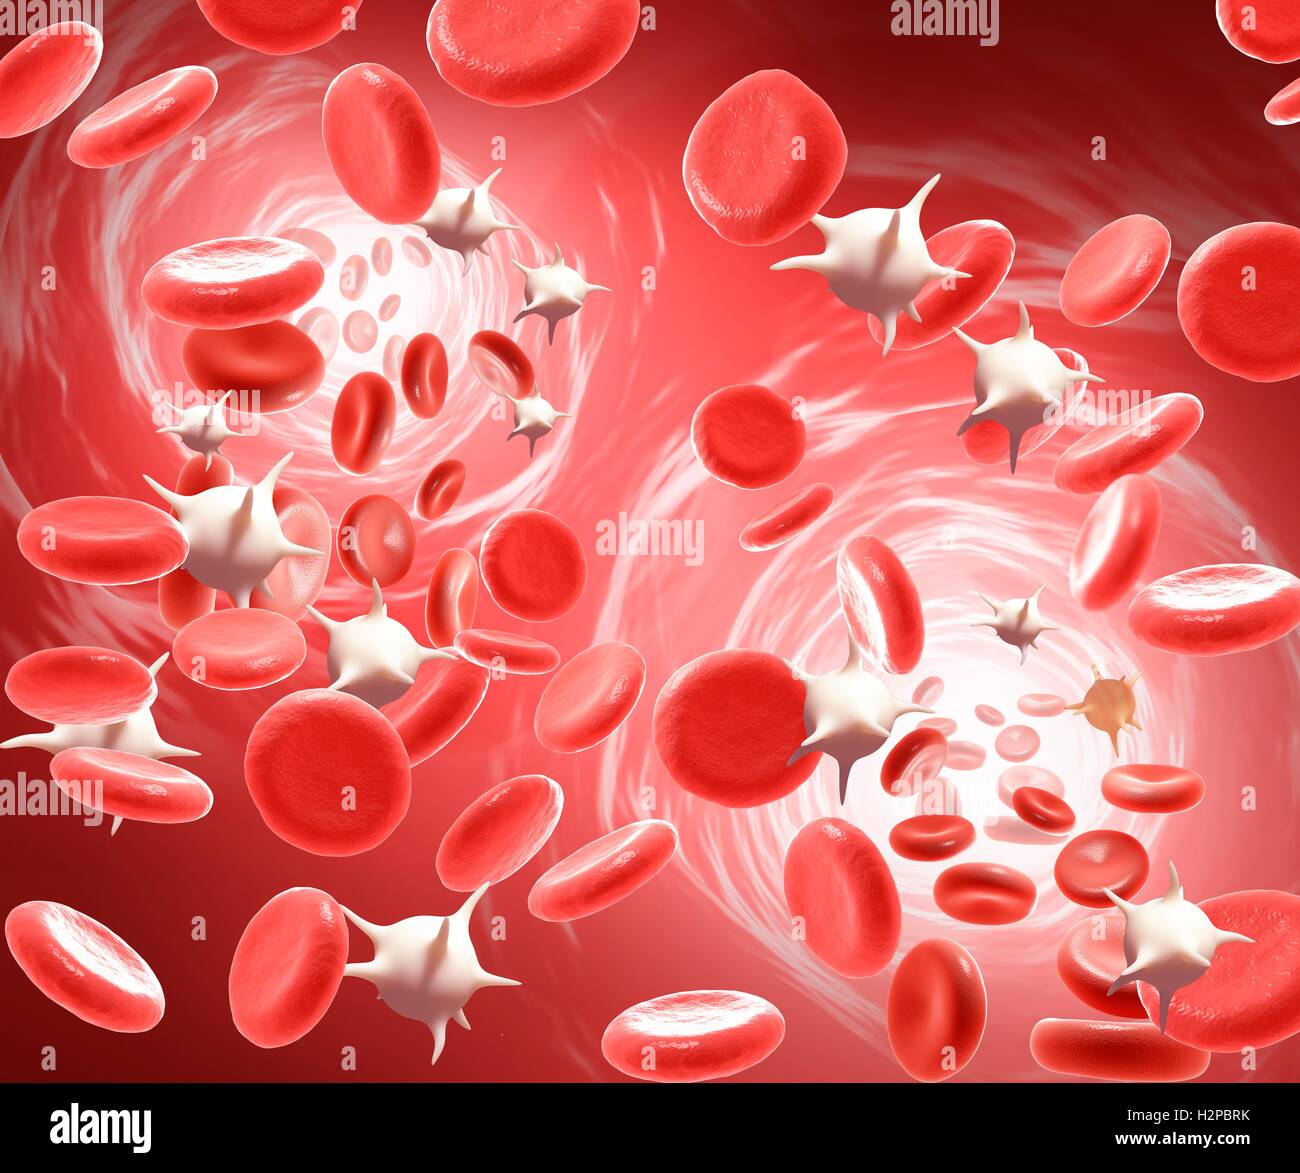 Illustrazione dei globuli rossi e dei globuli bianchi. Foto Stock